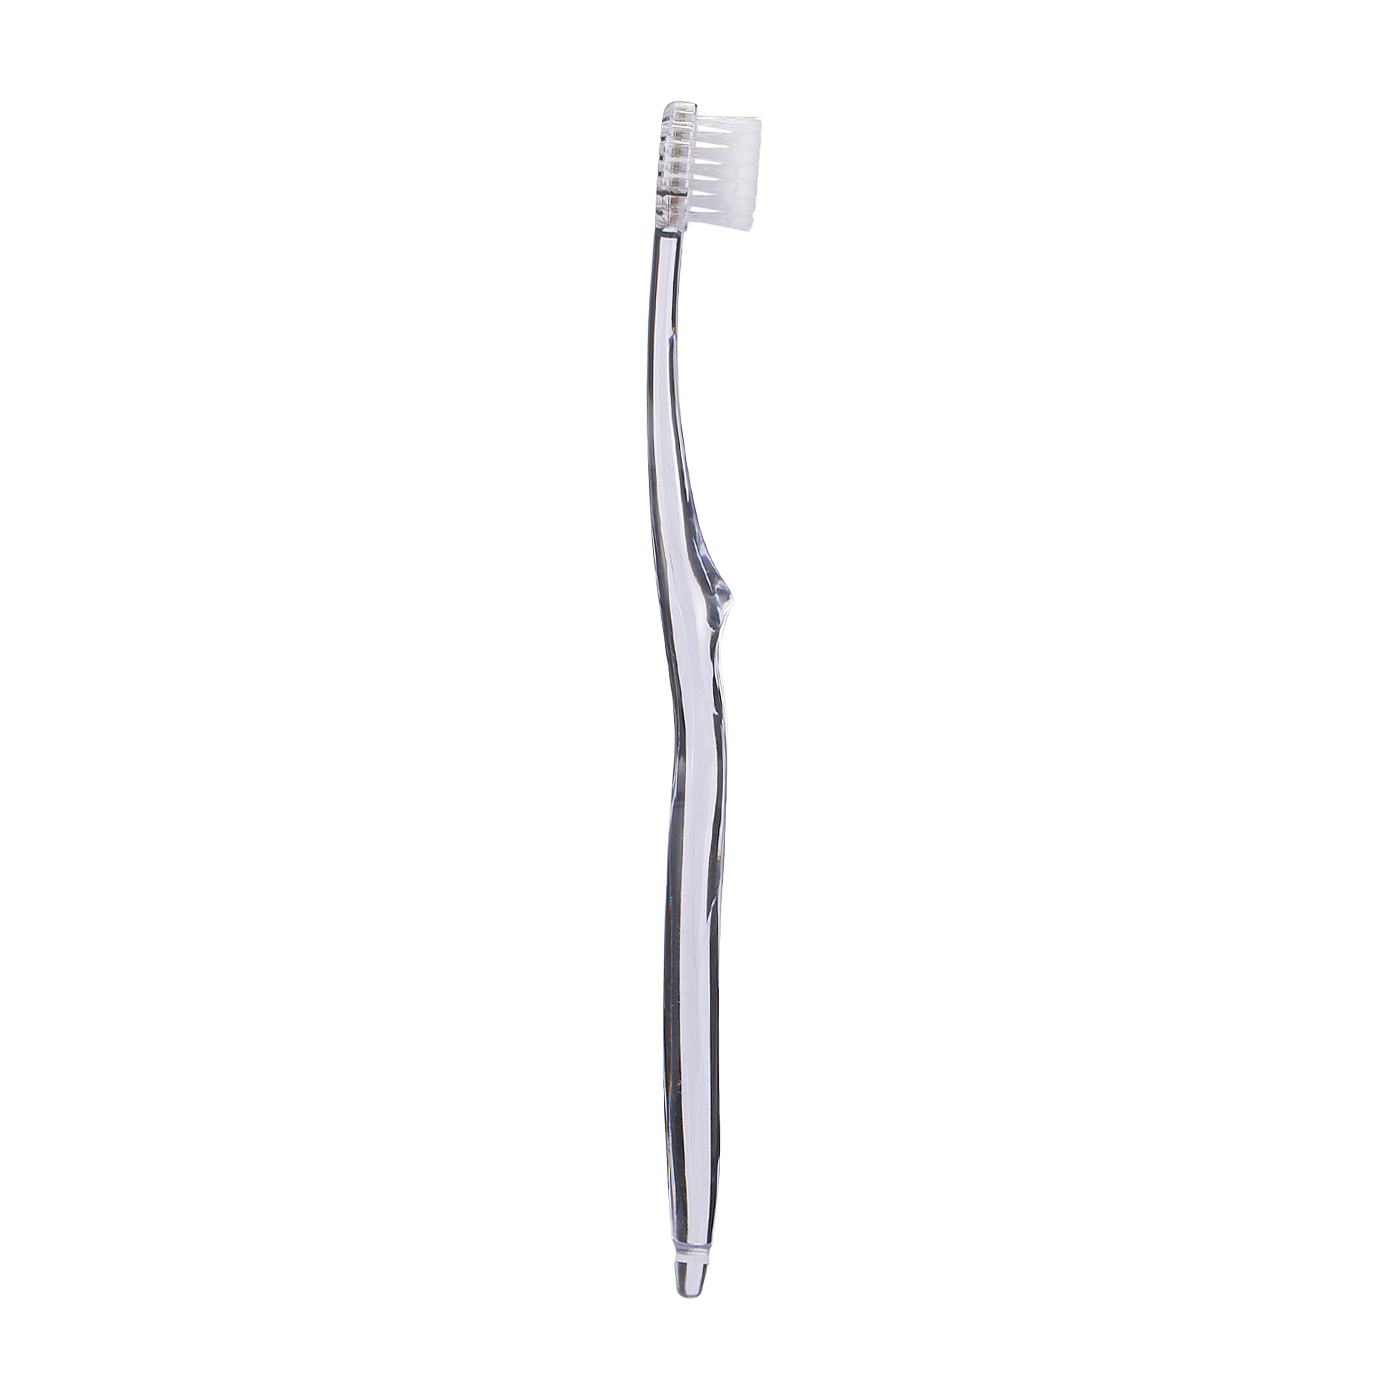 The toothbrush by MISOKA 歯ブラシ 高級歯ブラシ - 1